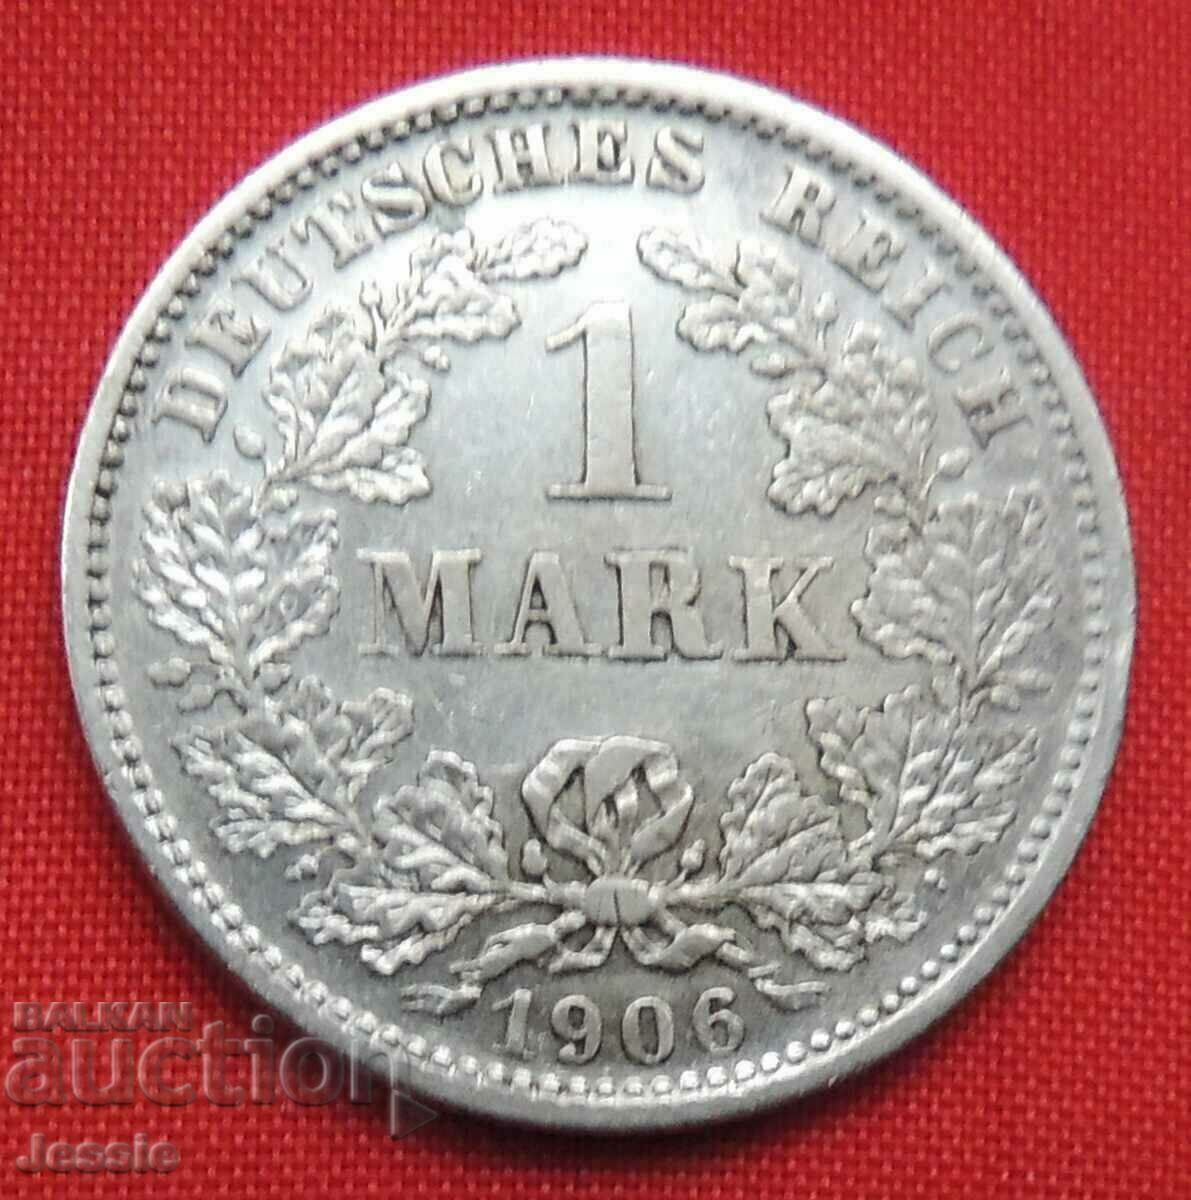 1 Marcu 1906 D Germania argint Munchen